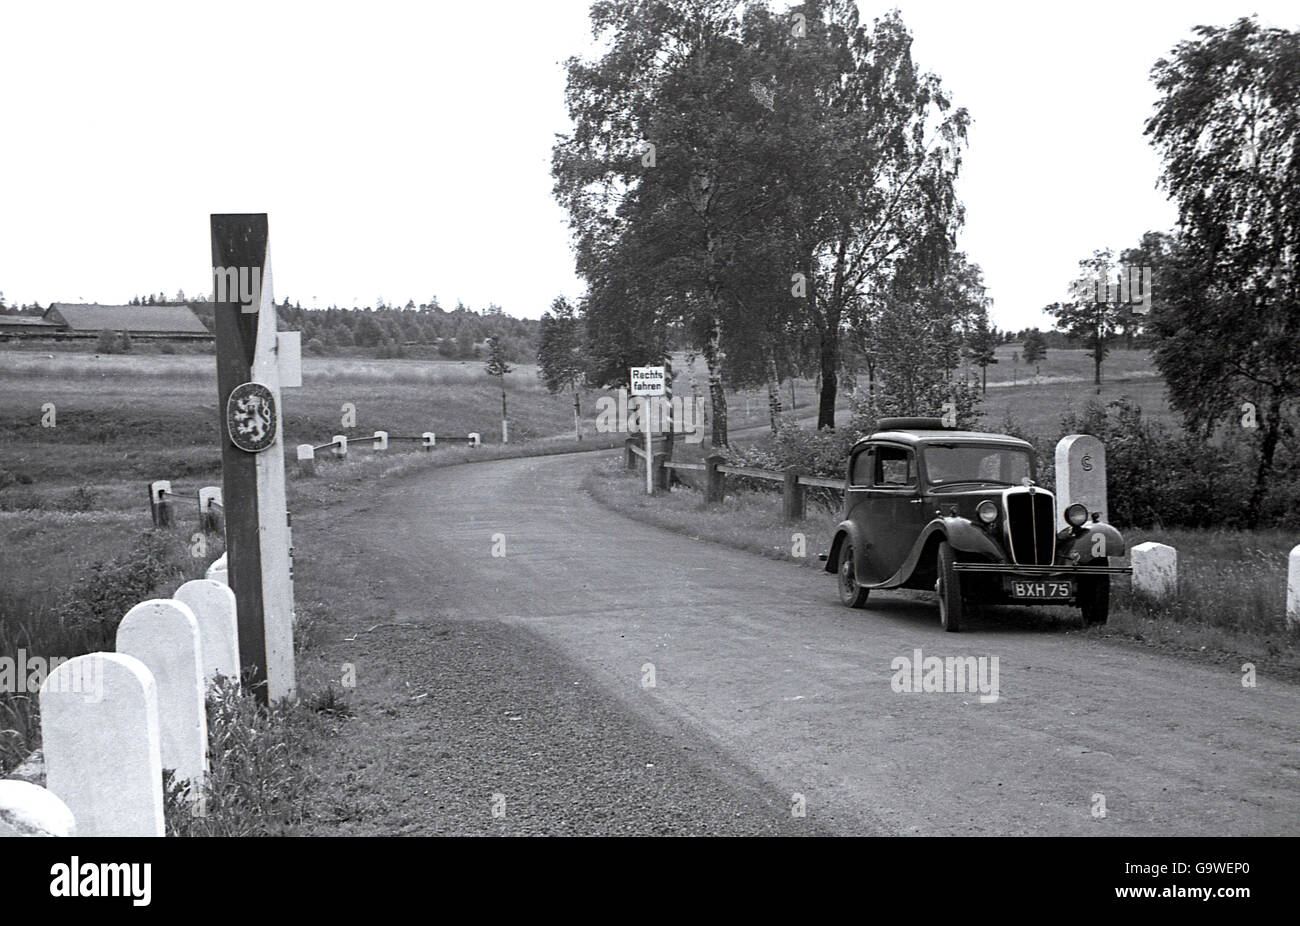 @ 1930, pre-ww11, storico, immagine mostra un auto con British numero piastre parcheggiato a fianco di un vicolo del paese nella regione di Karlovy Vary, 'Sudetenland', la lingua tedesca parte dell allora Cecoslovacchia. Foto Stock